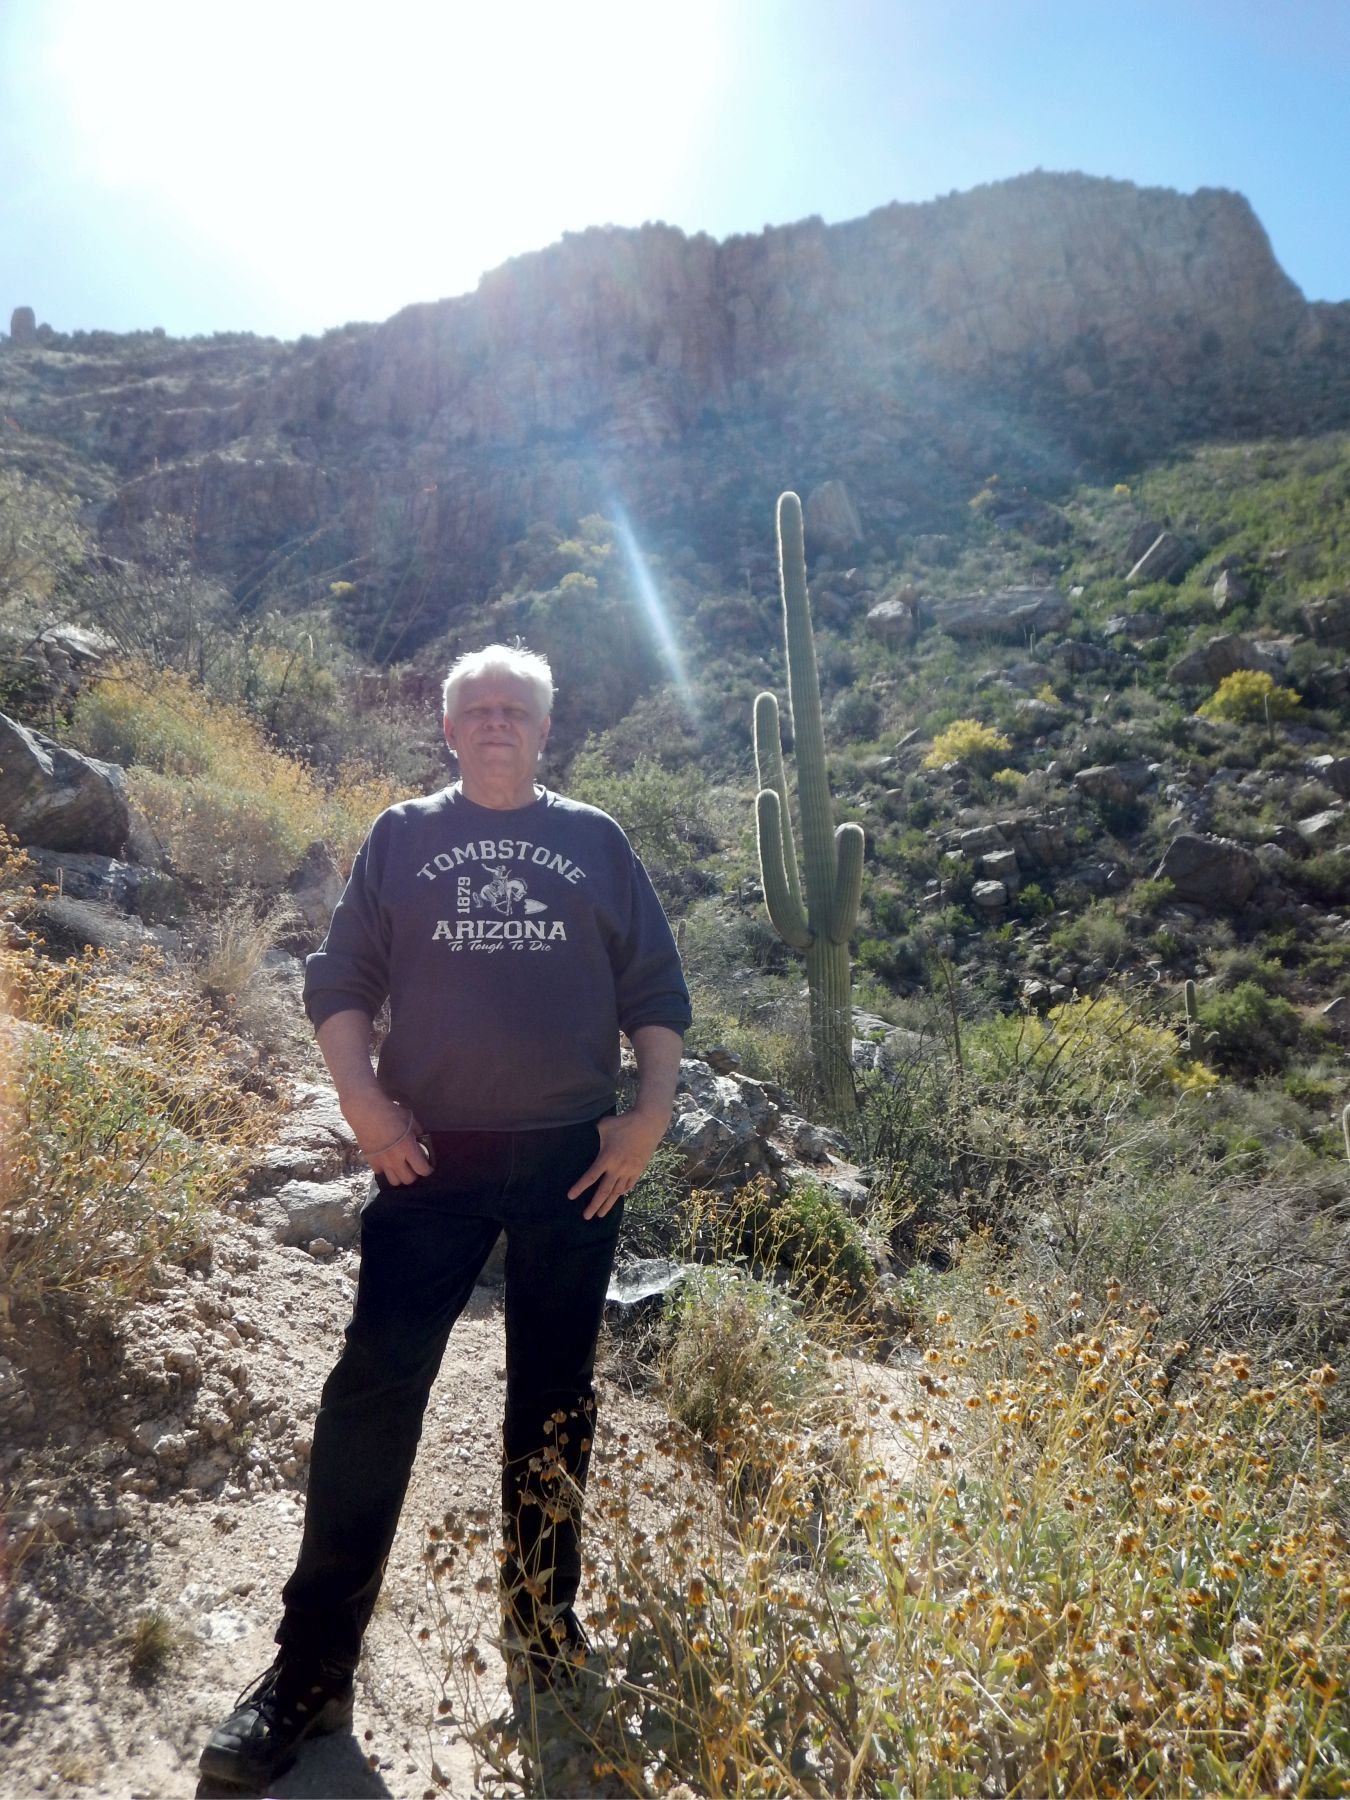 Sabino Canyon - Geezer and cactus